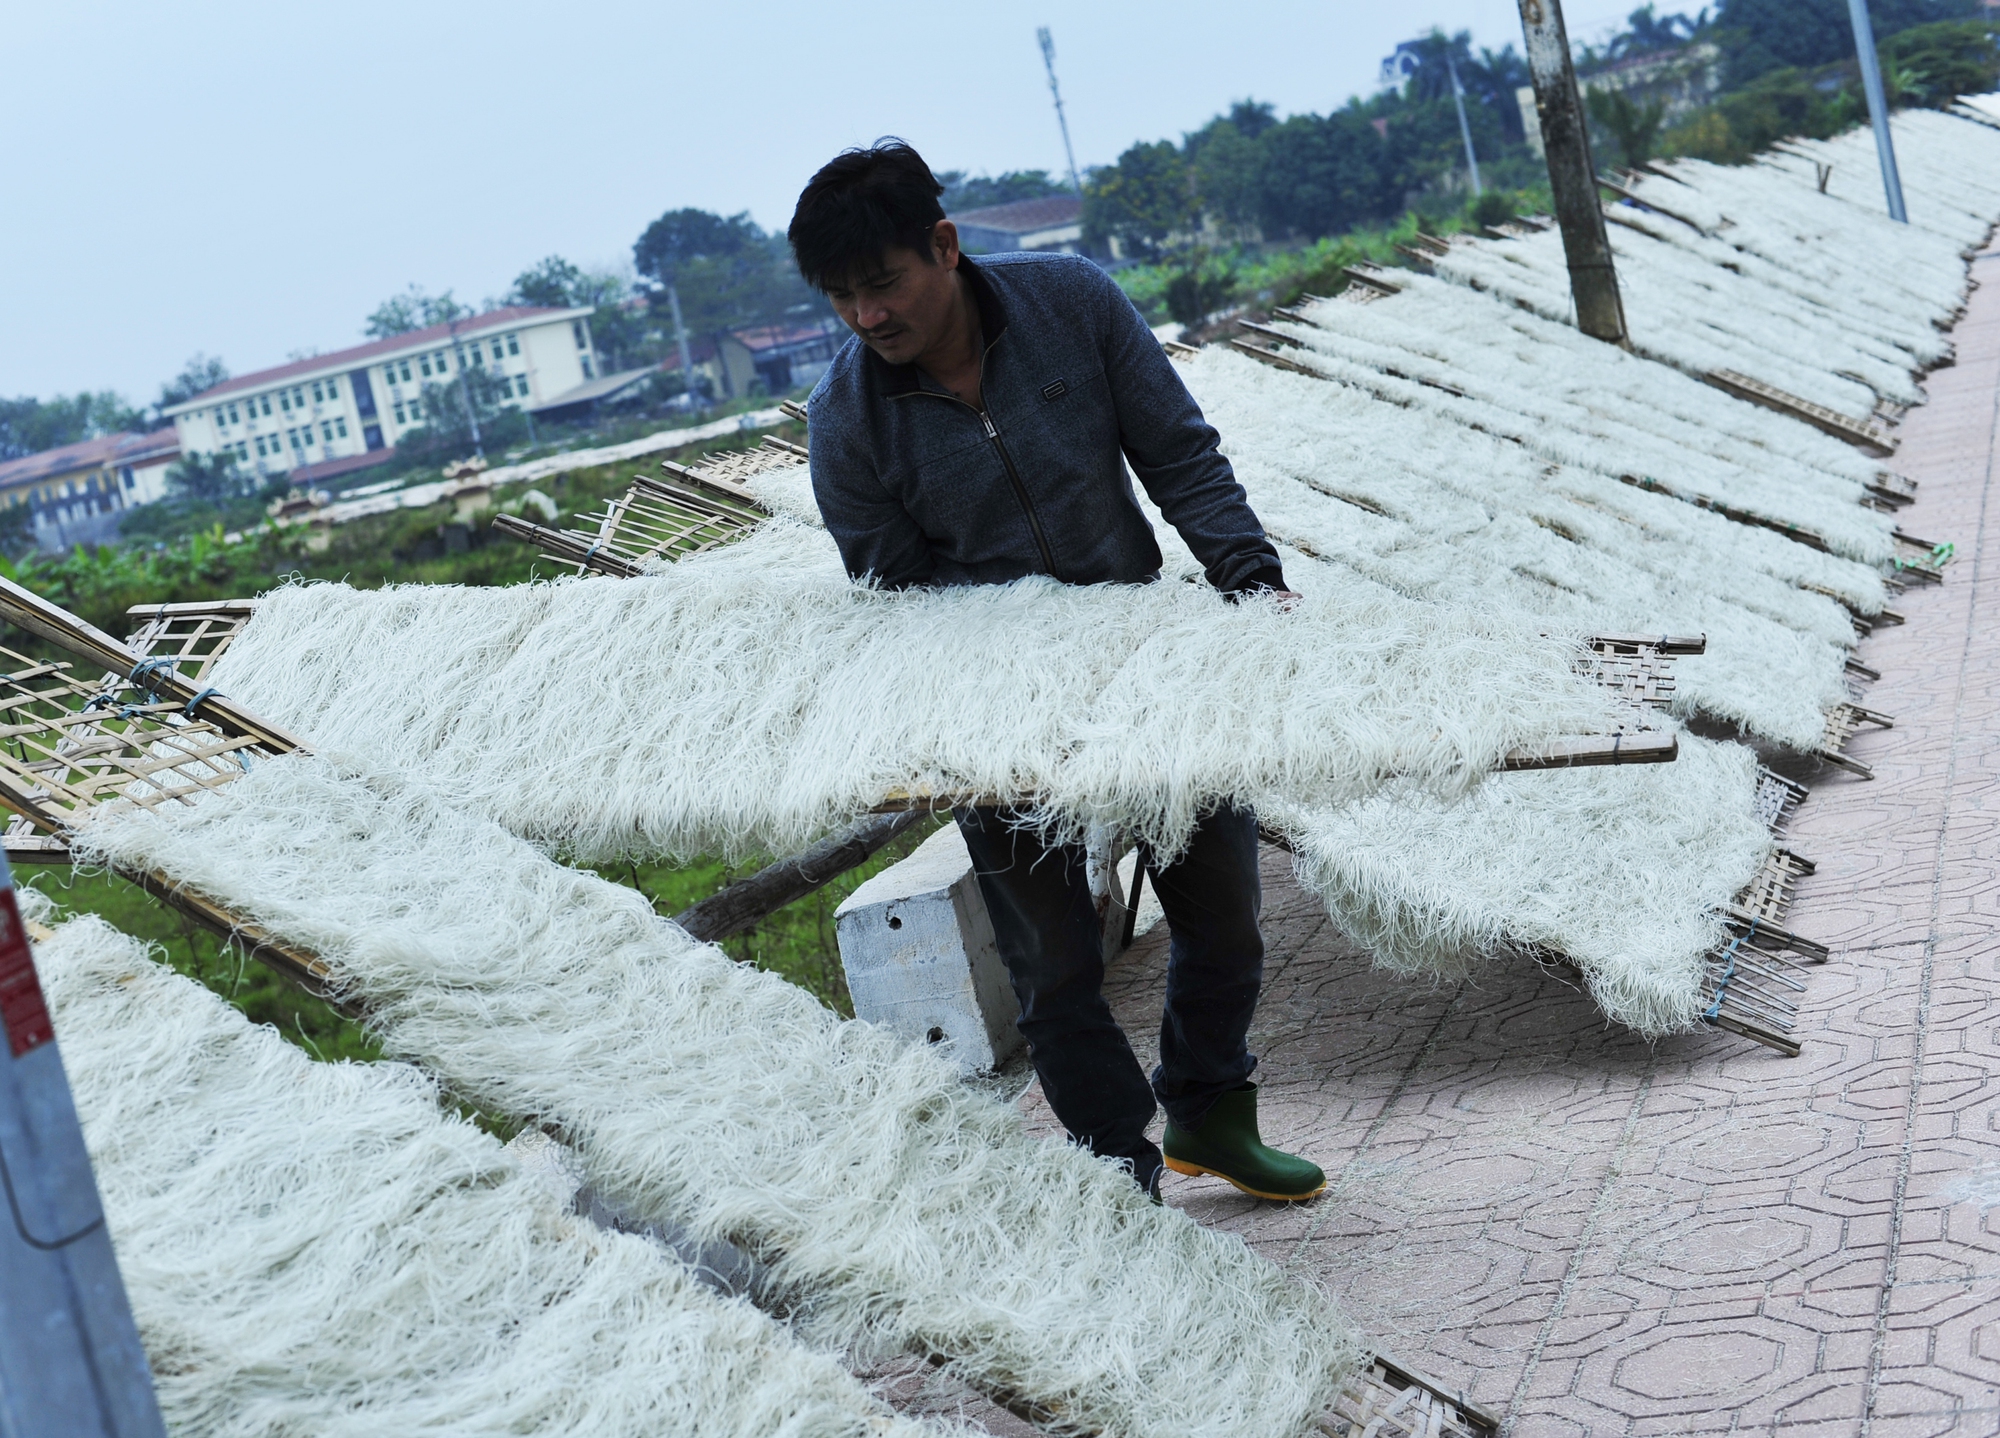 Làng nghề Minh Khai, huyện Hoài Đức, Hà Nội được coi là nơi sản xuất bún, miến, bánh phở lớn nhất chuyên cung cấp cho cả nước.